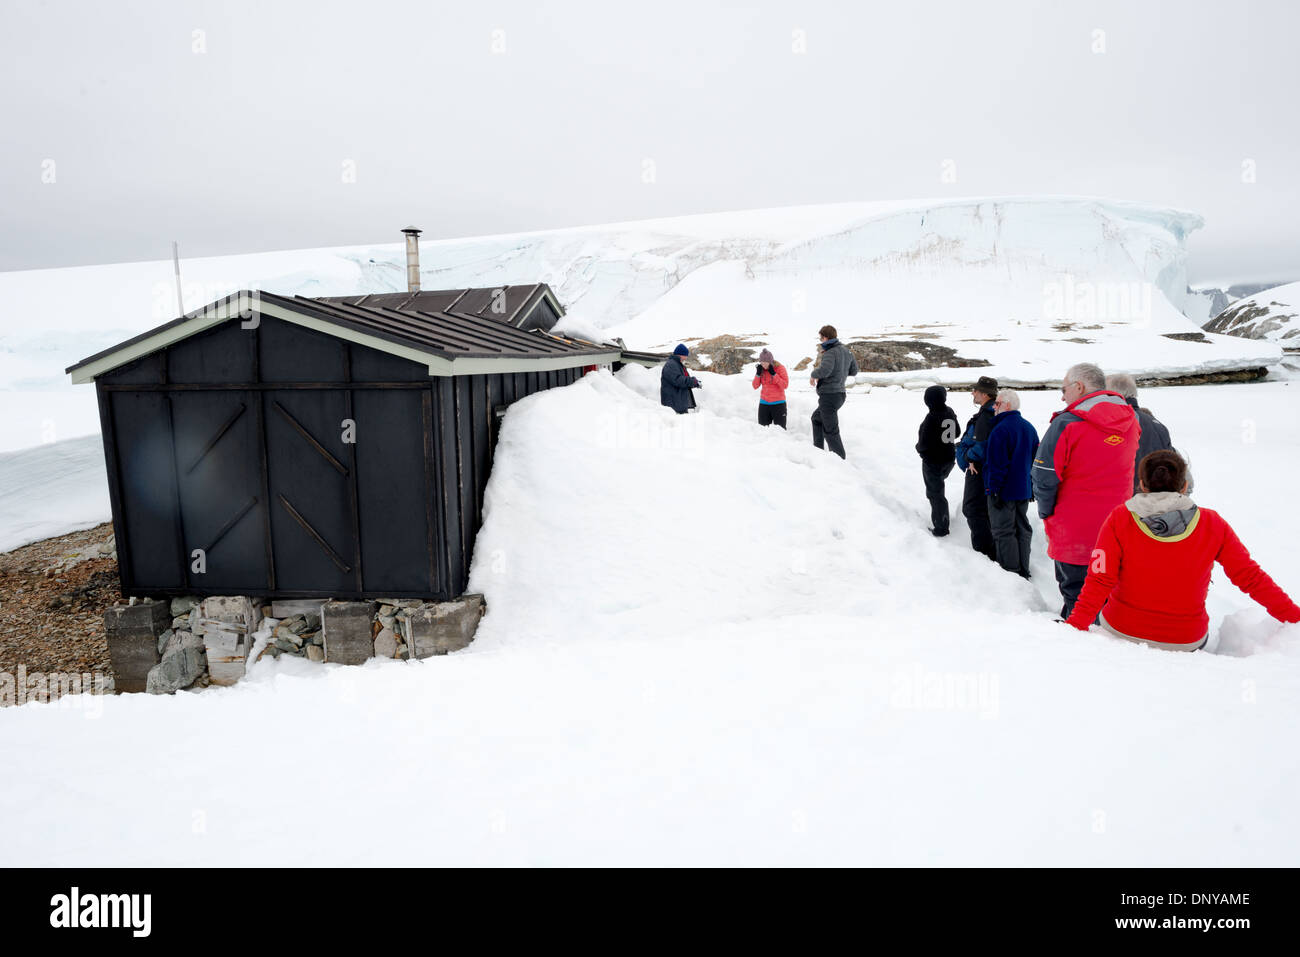 L'ANTARCTIQUE - Les touristes visiter le site historique de Wordie House dans l'Antarctique. Initialement connu sous le nom F de base et plus tard renommé après James Wordie, expert scientifique en chef sur Ernest Shackleton's Antarctic expedition majeur, Wordie House remonte au milieu des années 1940. C'était l'un d'une poignée de bases construit par les Britanniques dans le cadre d'une mission de la Seconde Guerre mondiale secret code Opération Tabarin. La maison est conservée intacte et se tient près de la Base de recherche Vernadsky dans les îles Argentines dans l'Antarctique. Banque D'Images